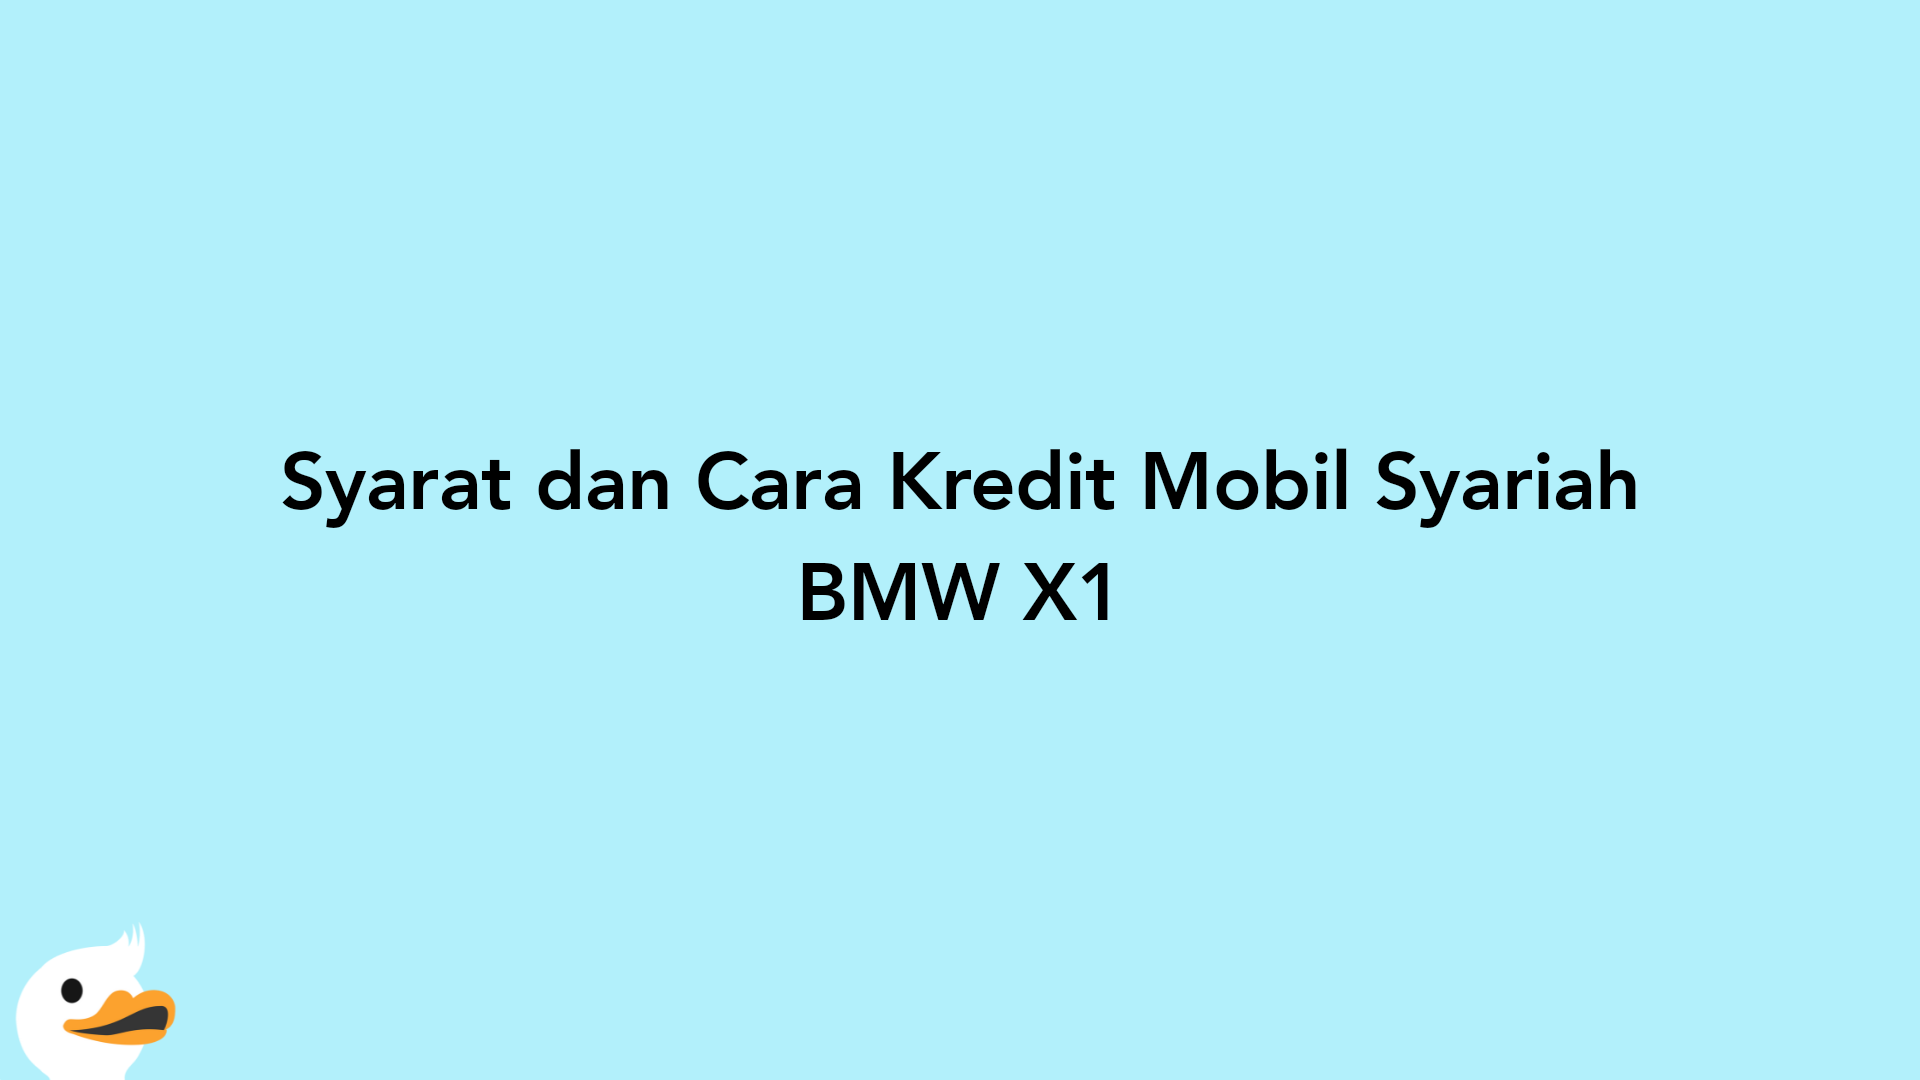 Syarat dan Cara Kredit Mobil Syariah BMW X1